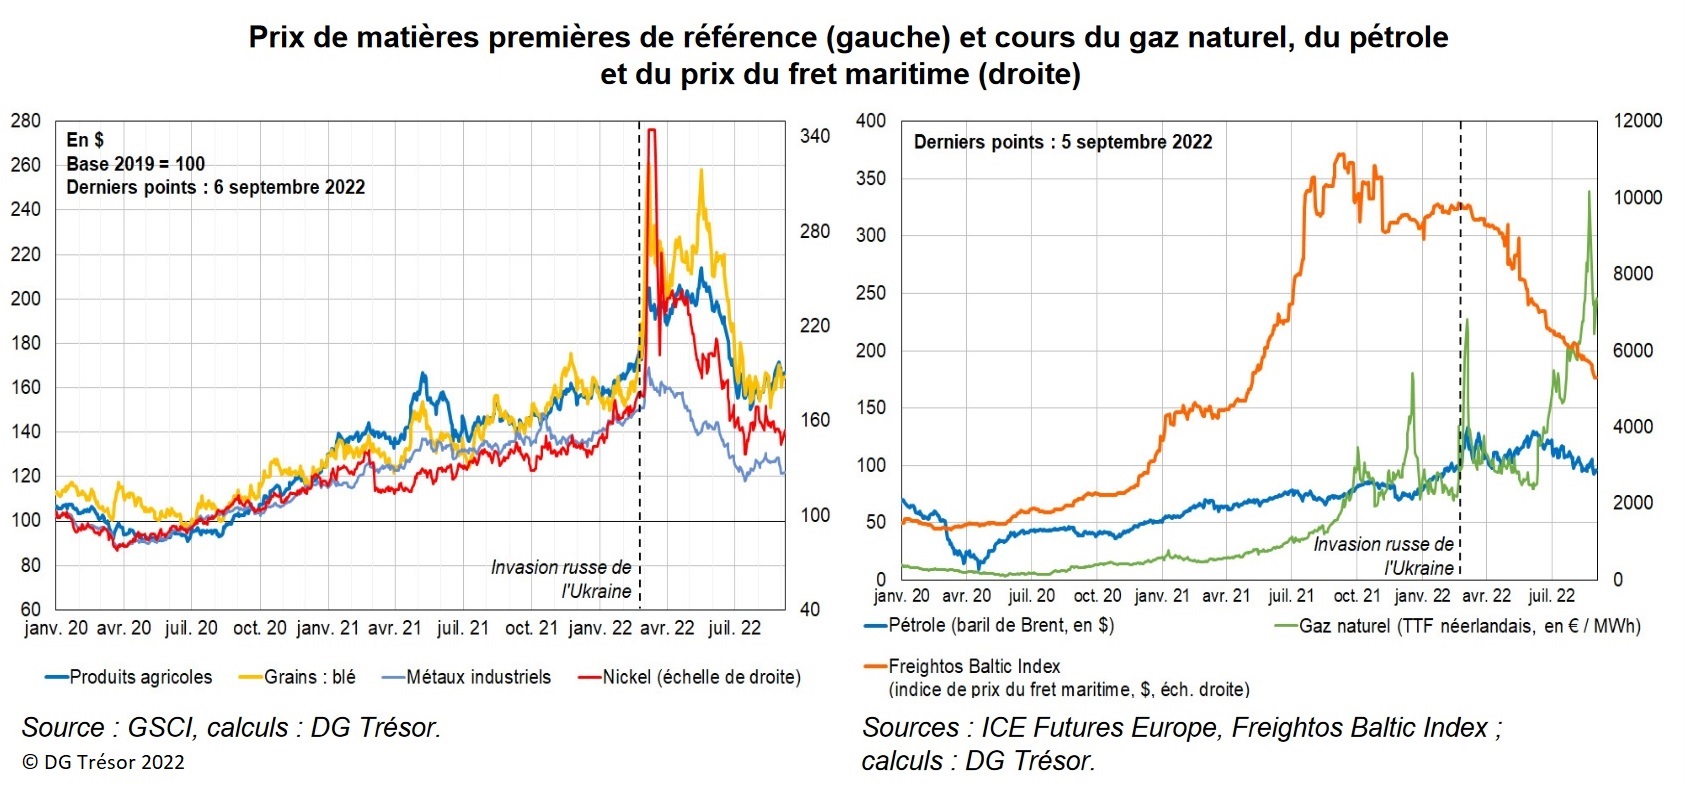 Graphiques : Prix de matières premières de référence (gauche) et cours du gaz naturel, du pétrole et du prix du fret maritime (droite)